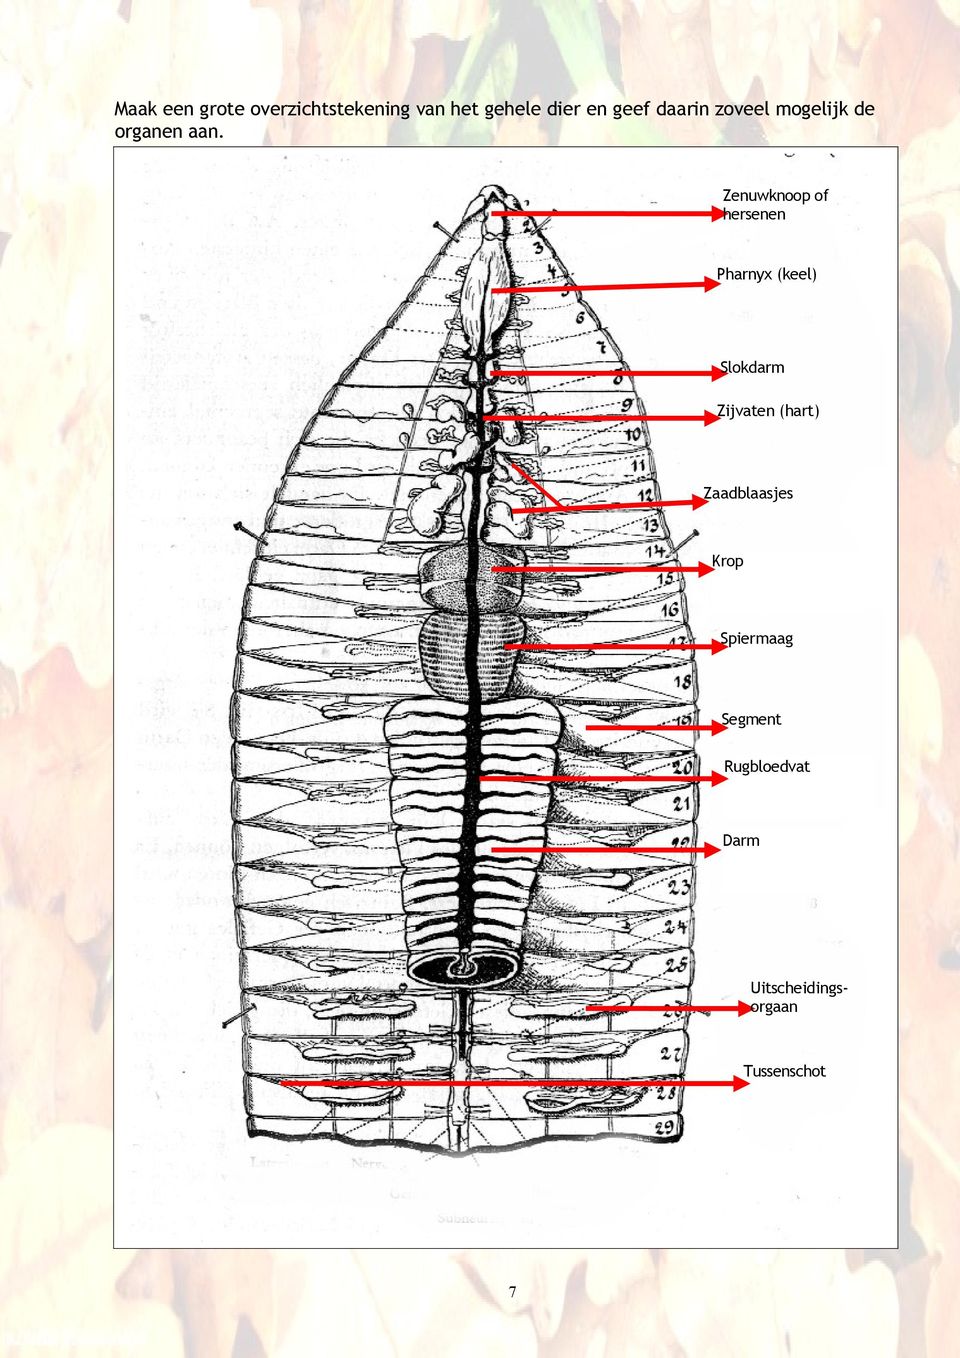 Zenuwknoop of hersenen Pharnyx (keel) Slokdarm Zijvaten (hart)